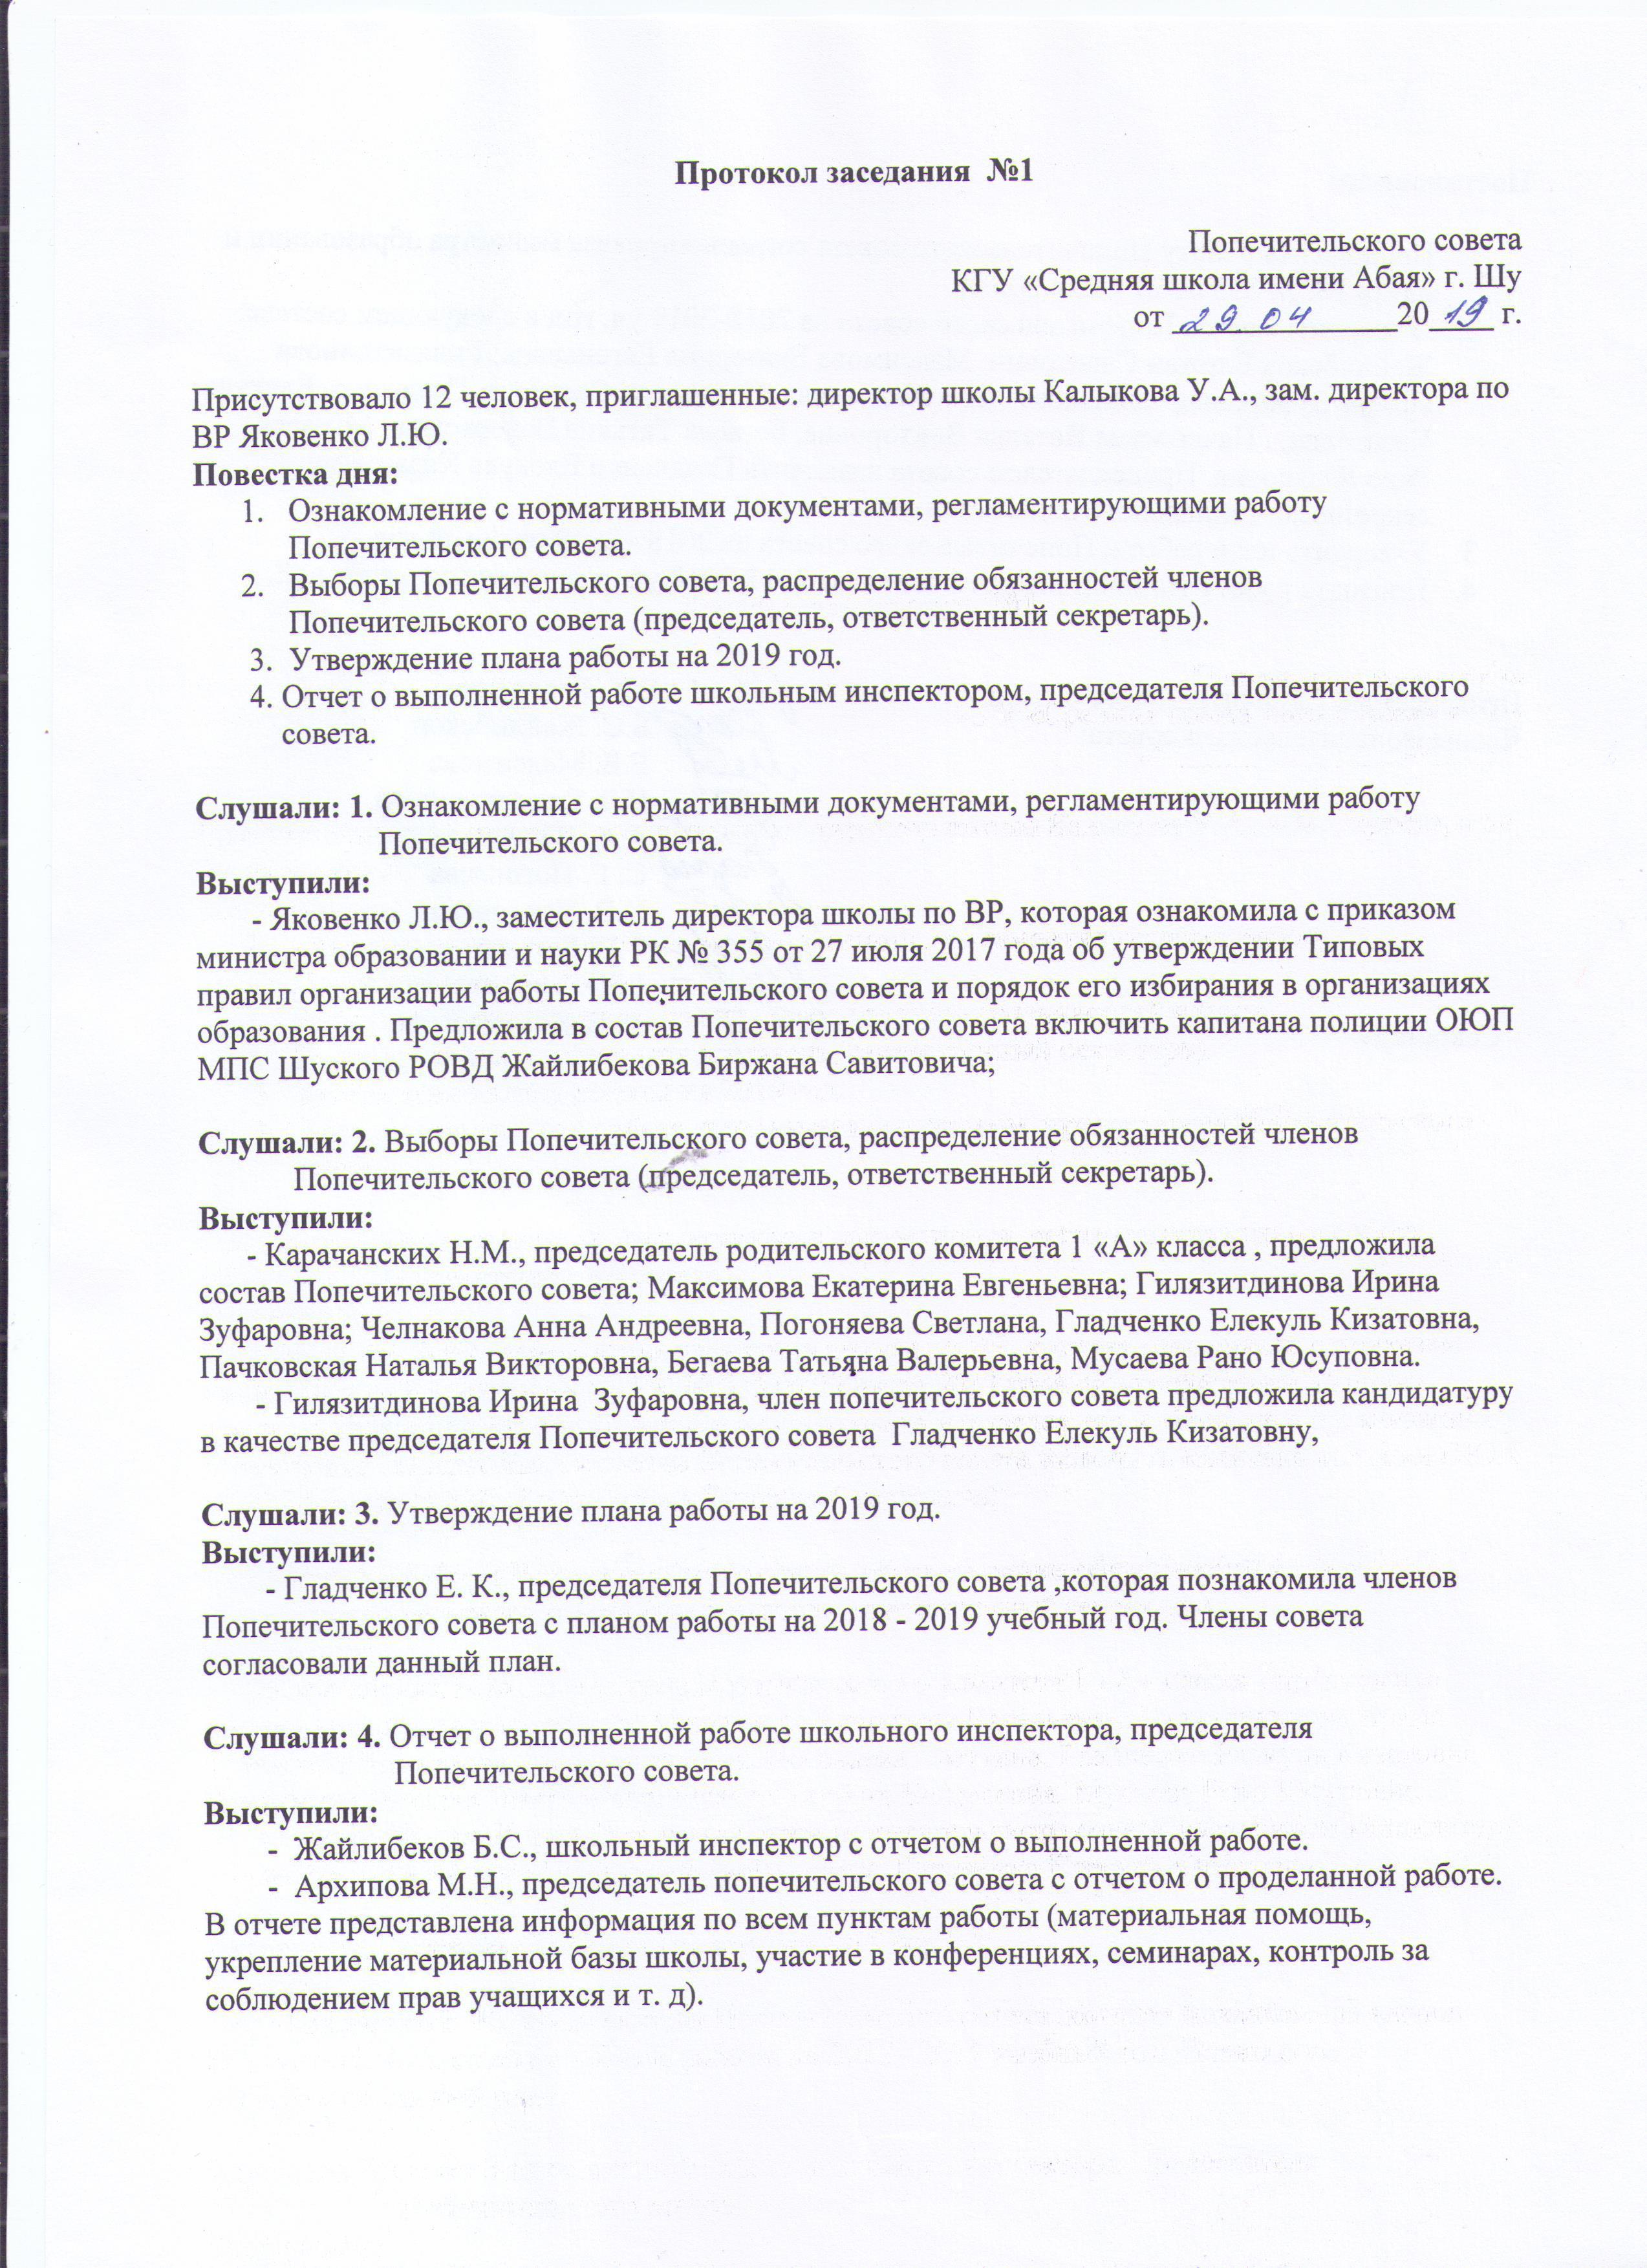 Протокол попечительского совета от 29.04.2019